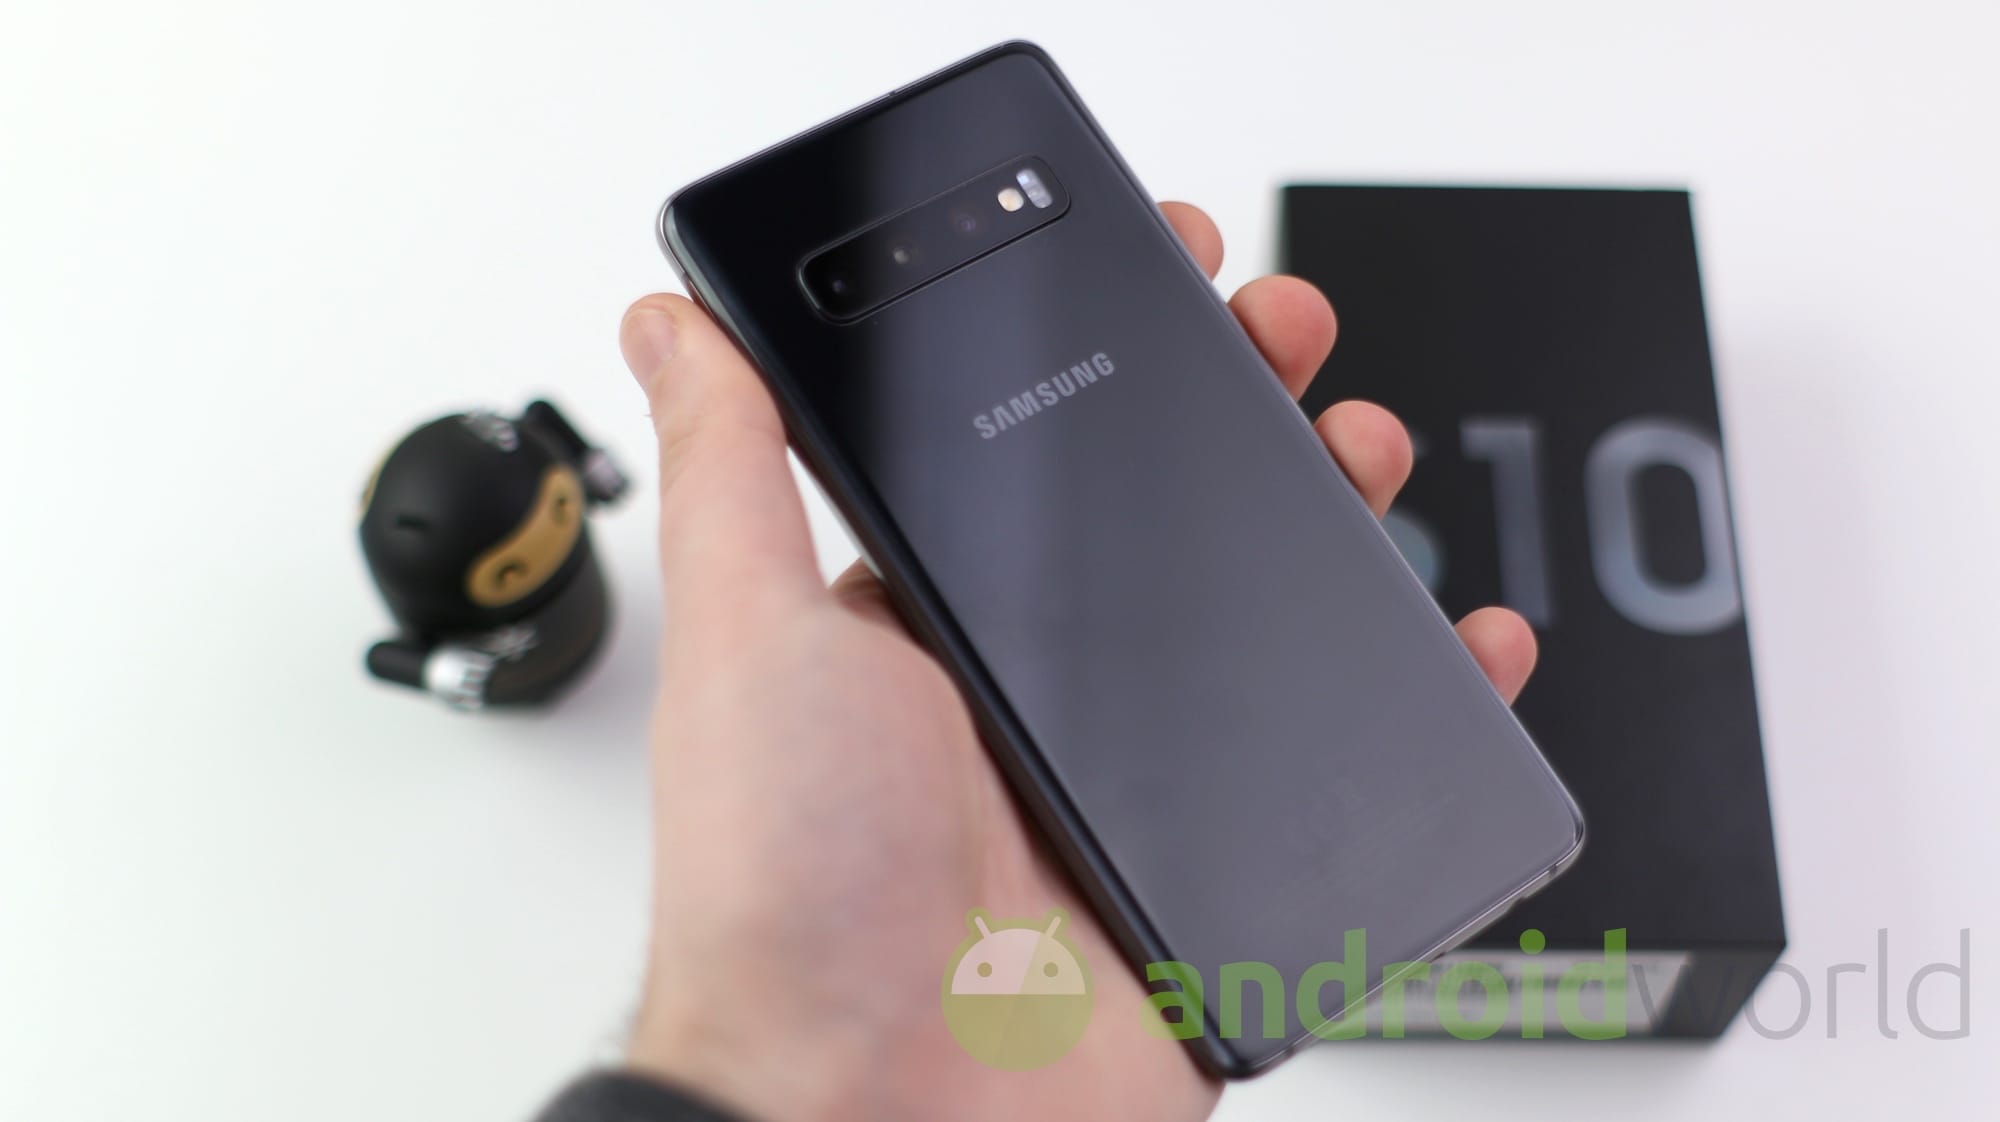 NO IVA Samsung Galaxy S10: da Trony il miglior prezzo delle grandi catene